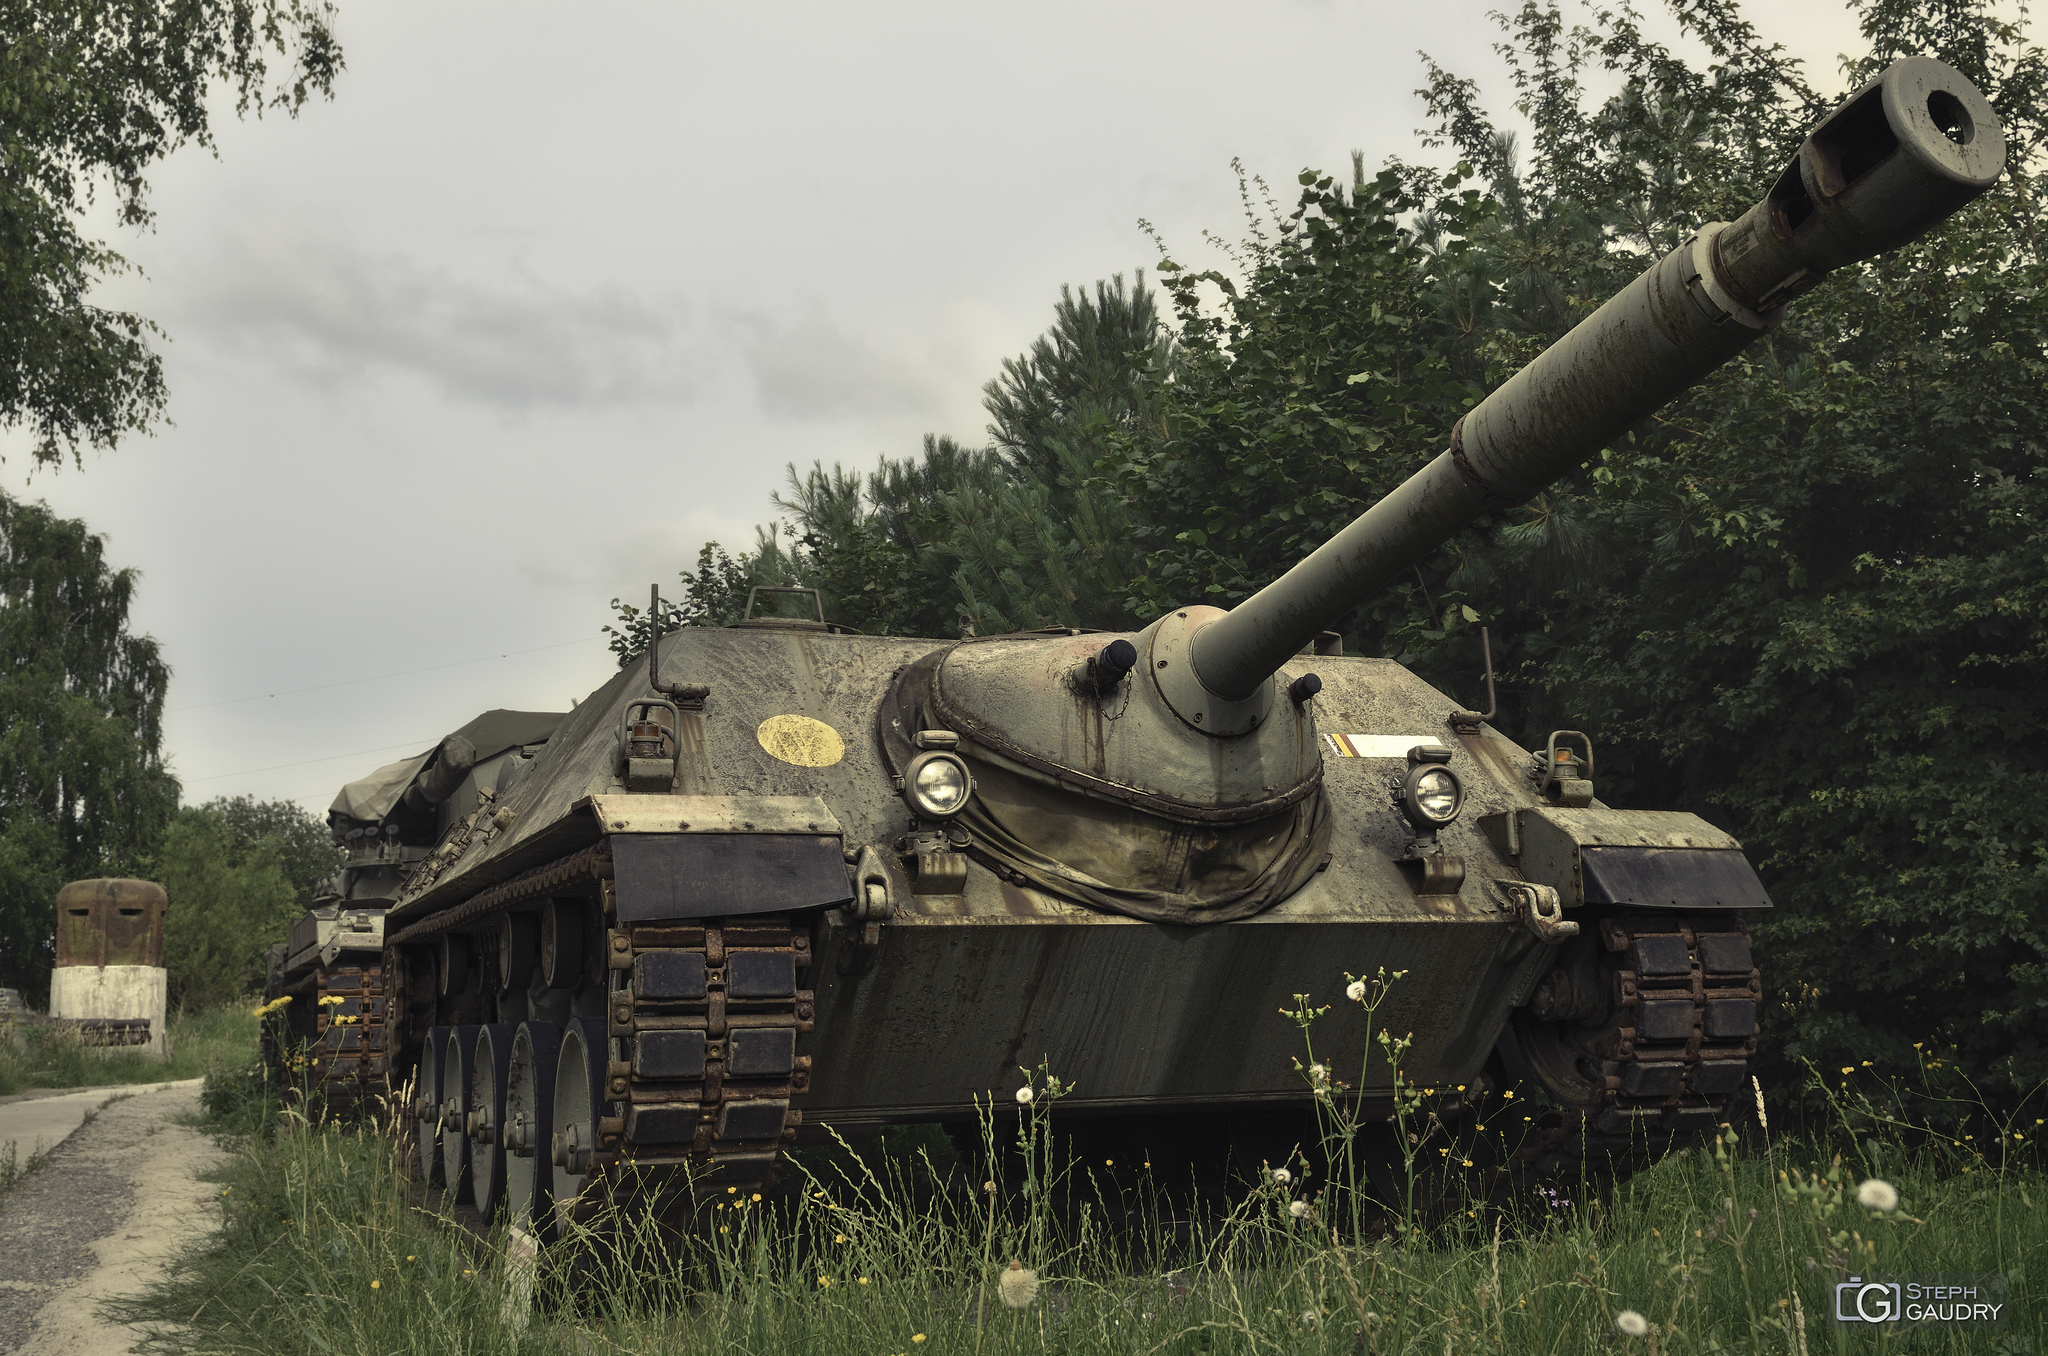 Jagdpanzer Kanone Jpz 4-53 [Klicken Sie hier, um die Diashow zu starten]